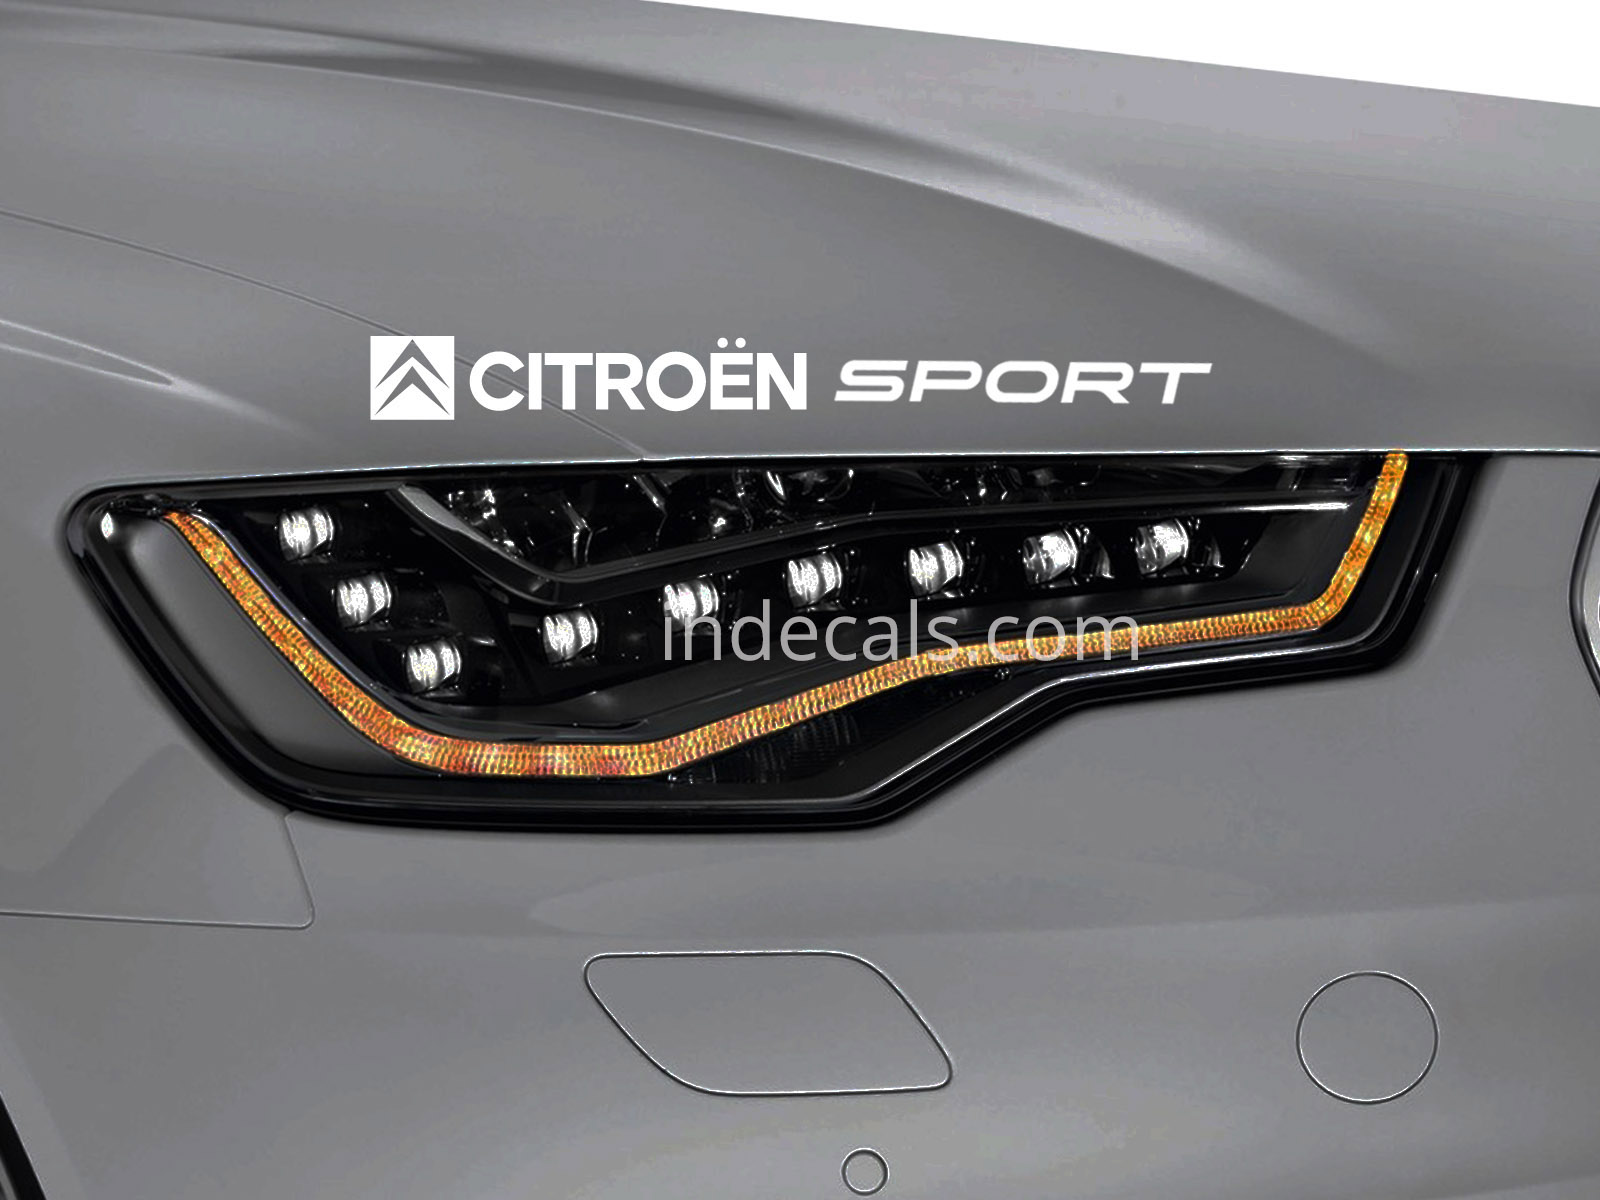 1 x Citroen Sport Sticker for Eyebrow - White